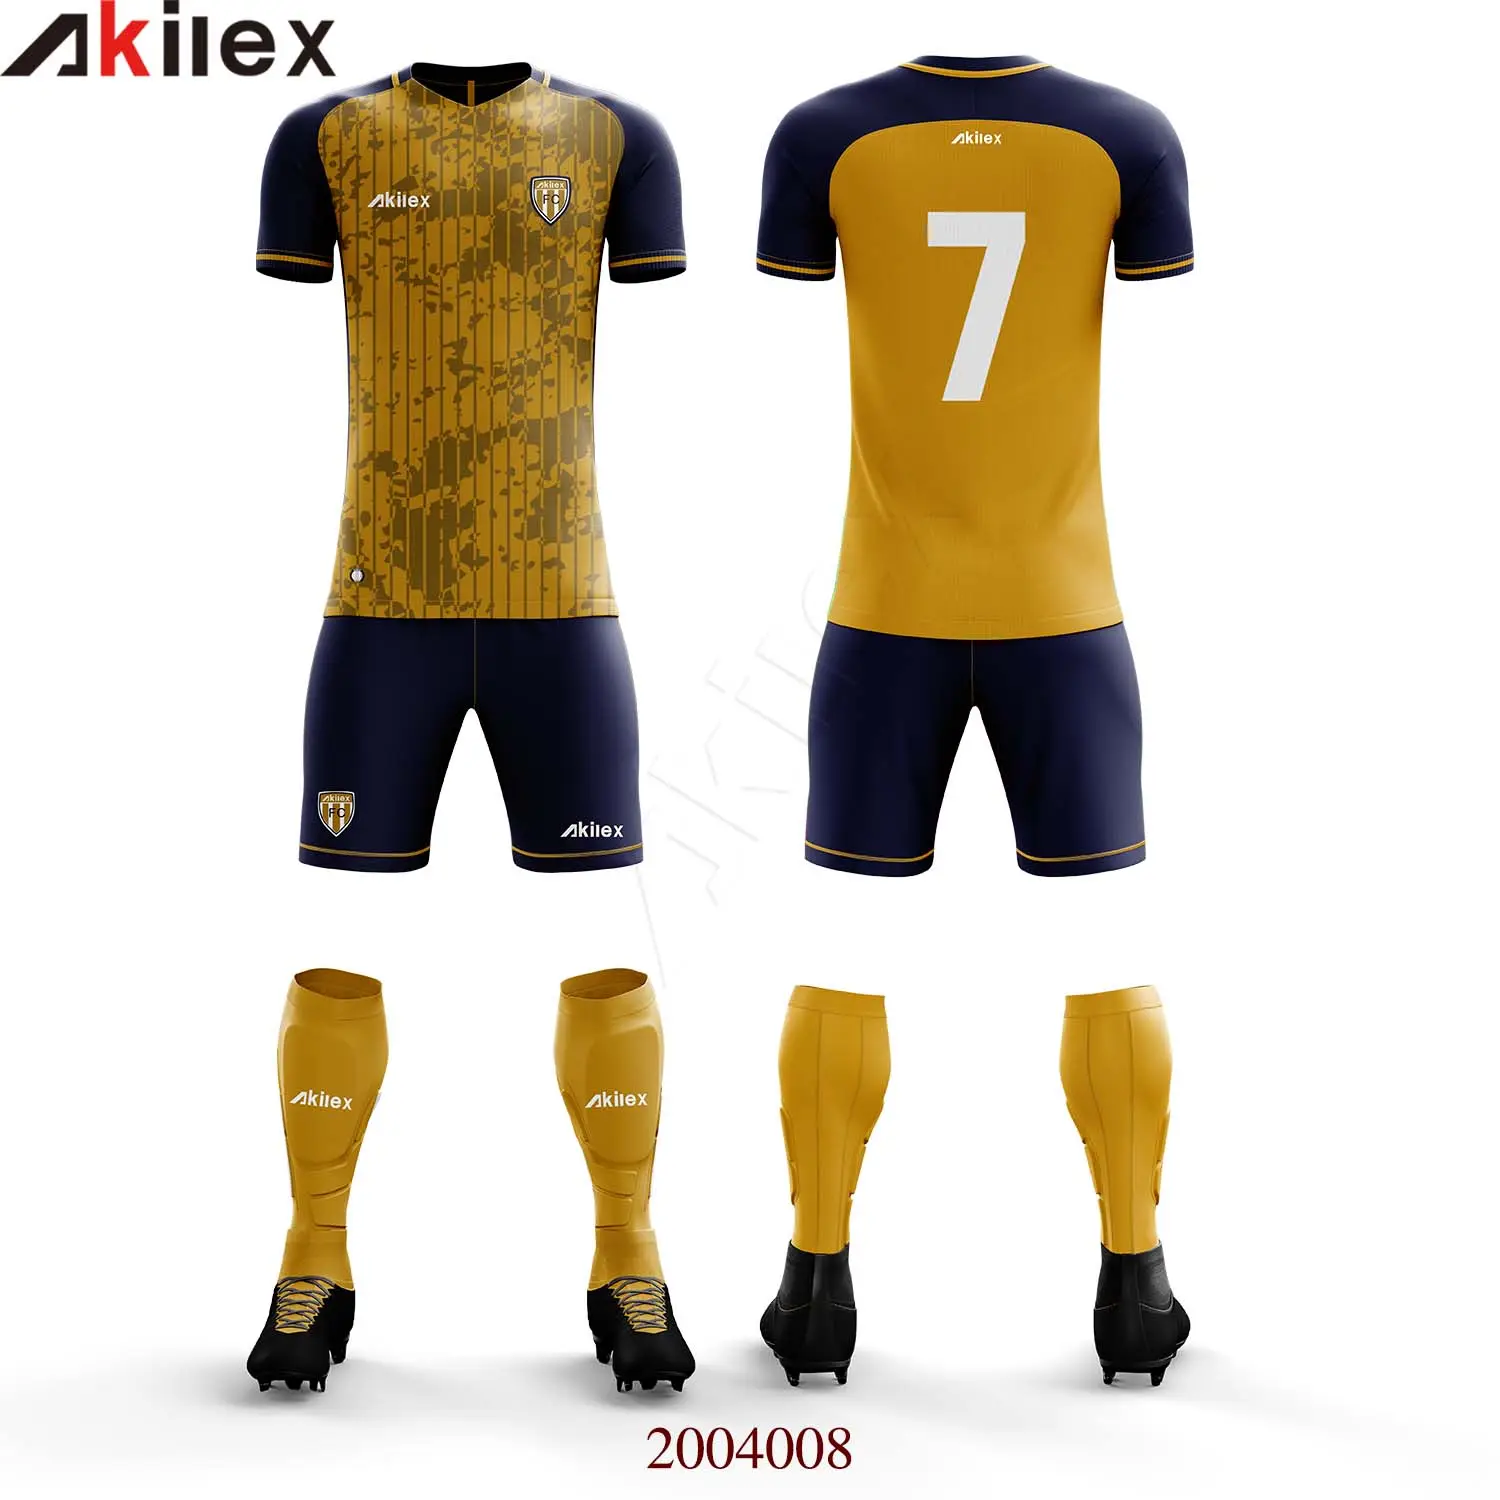 Kit de uniforme de futebol para personalização, mais novo design esportivo de equipe de futebol uniforme de futebol